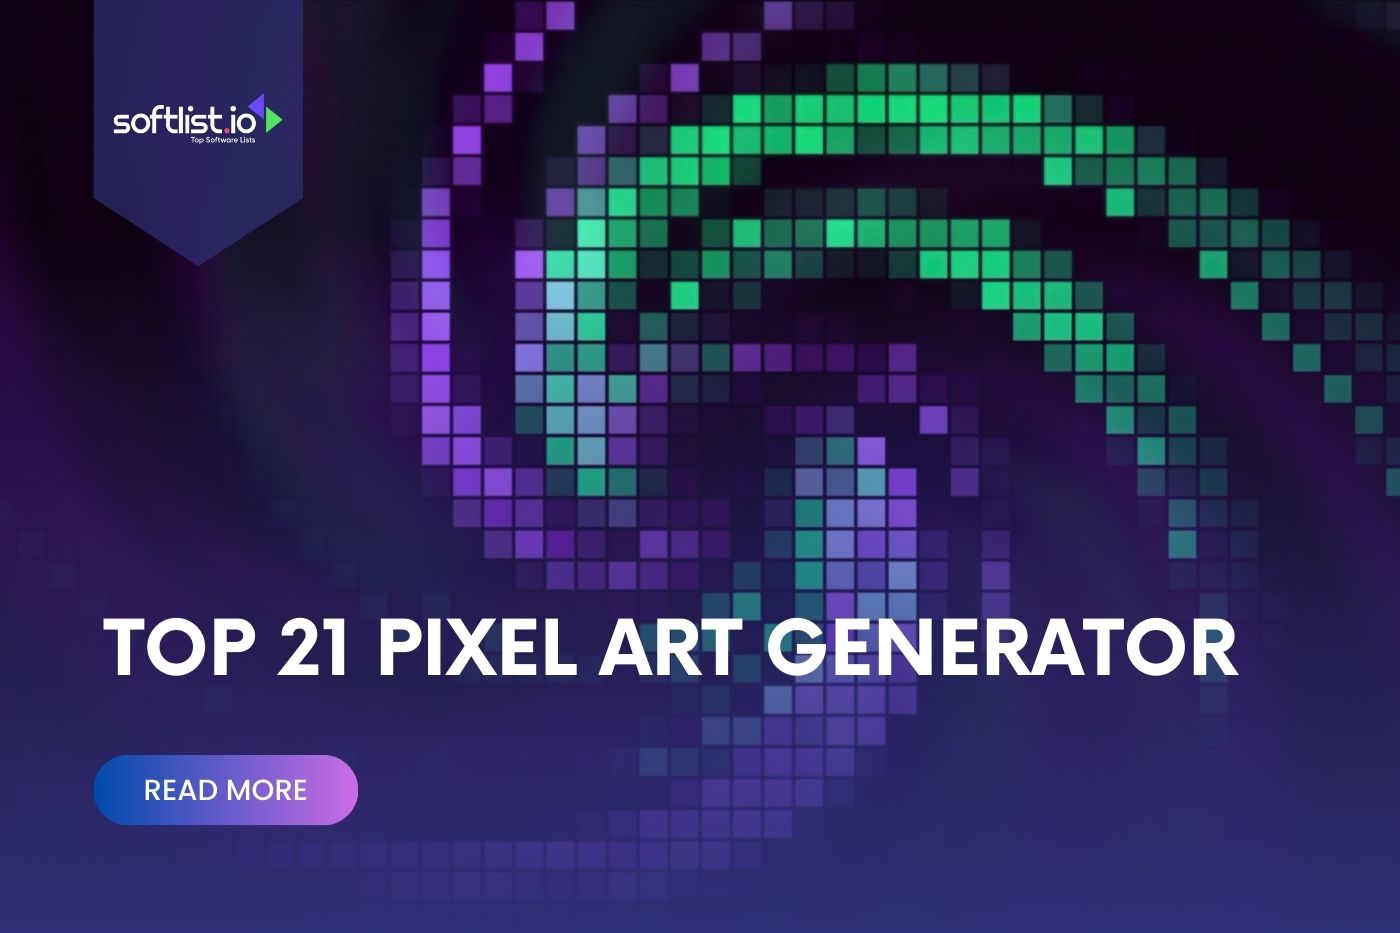 Top 21 Pixel Art Generator